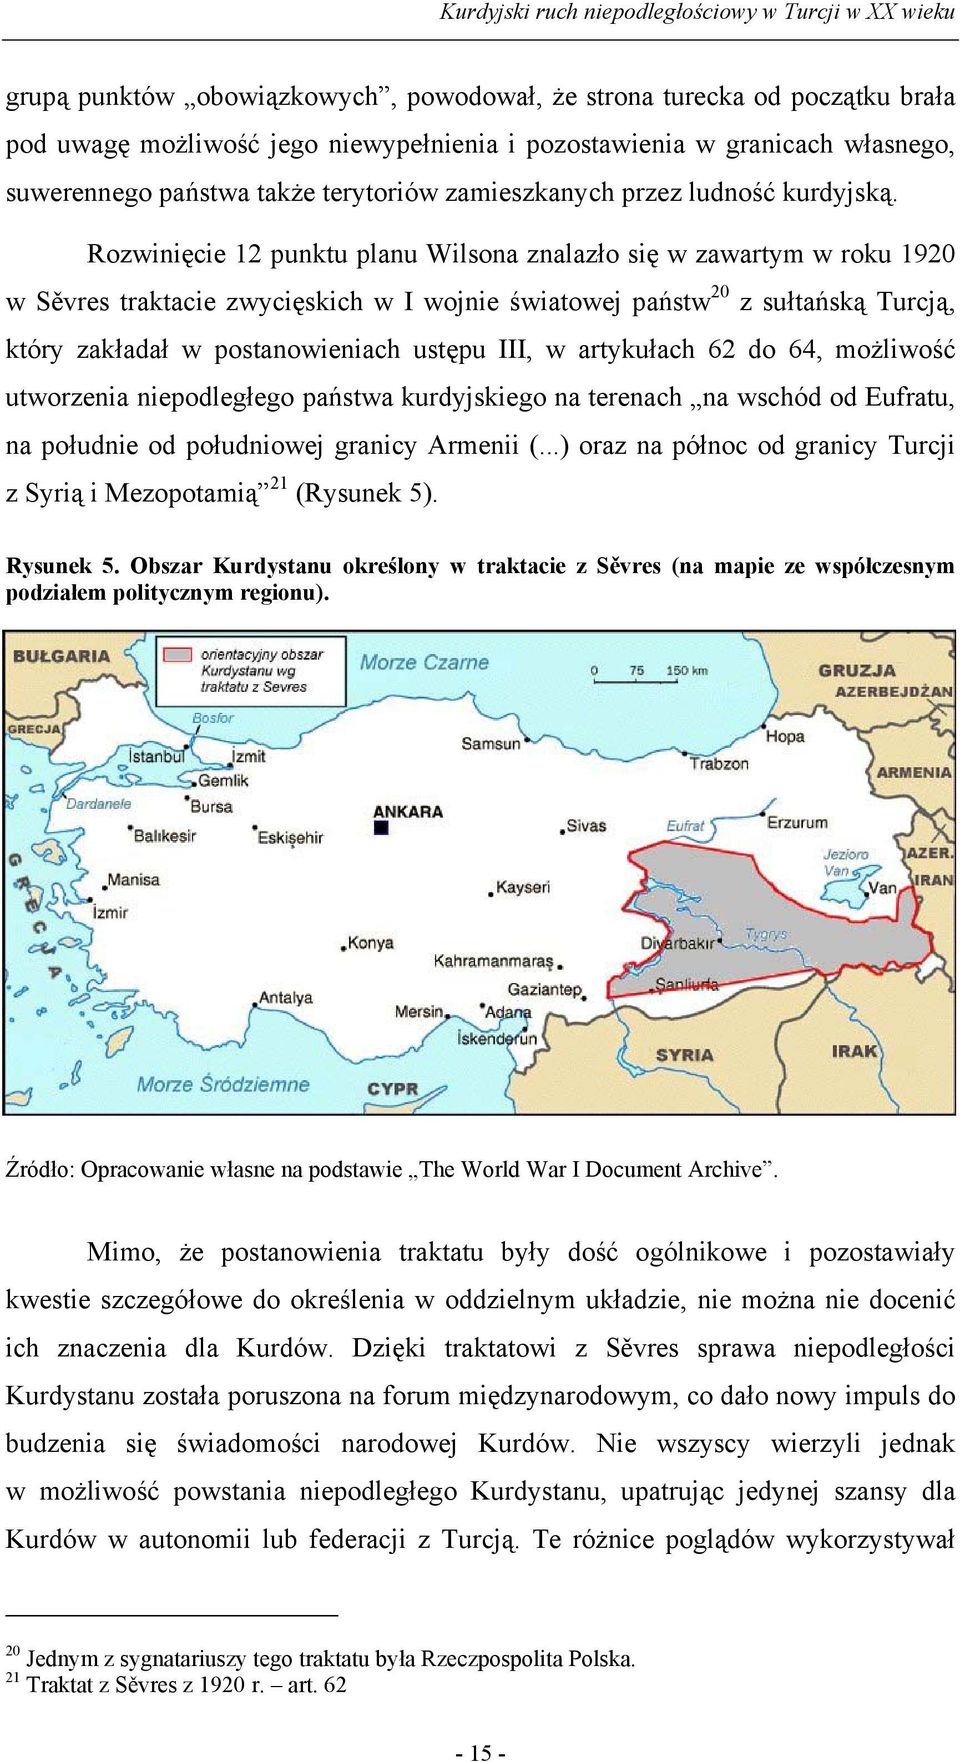 Rozwinięcie 12 punktu planu Wilsona znalazło się w zawartym w roku 1920 w Sěvres traktacie zwycięskich w I wojnie światowej państw 20 z sułtańską Turcją, który zakładał w postanowieniach ustępu III,